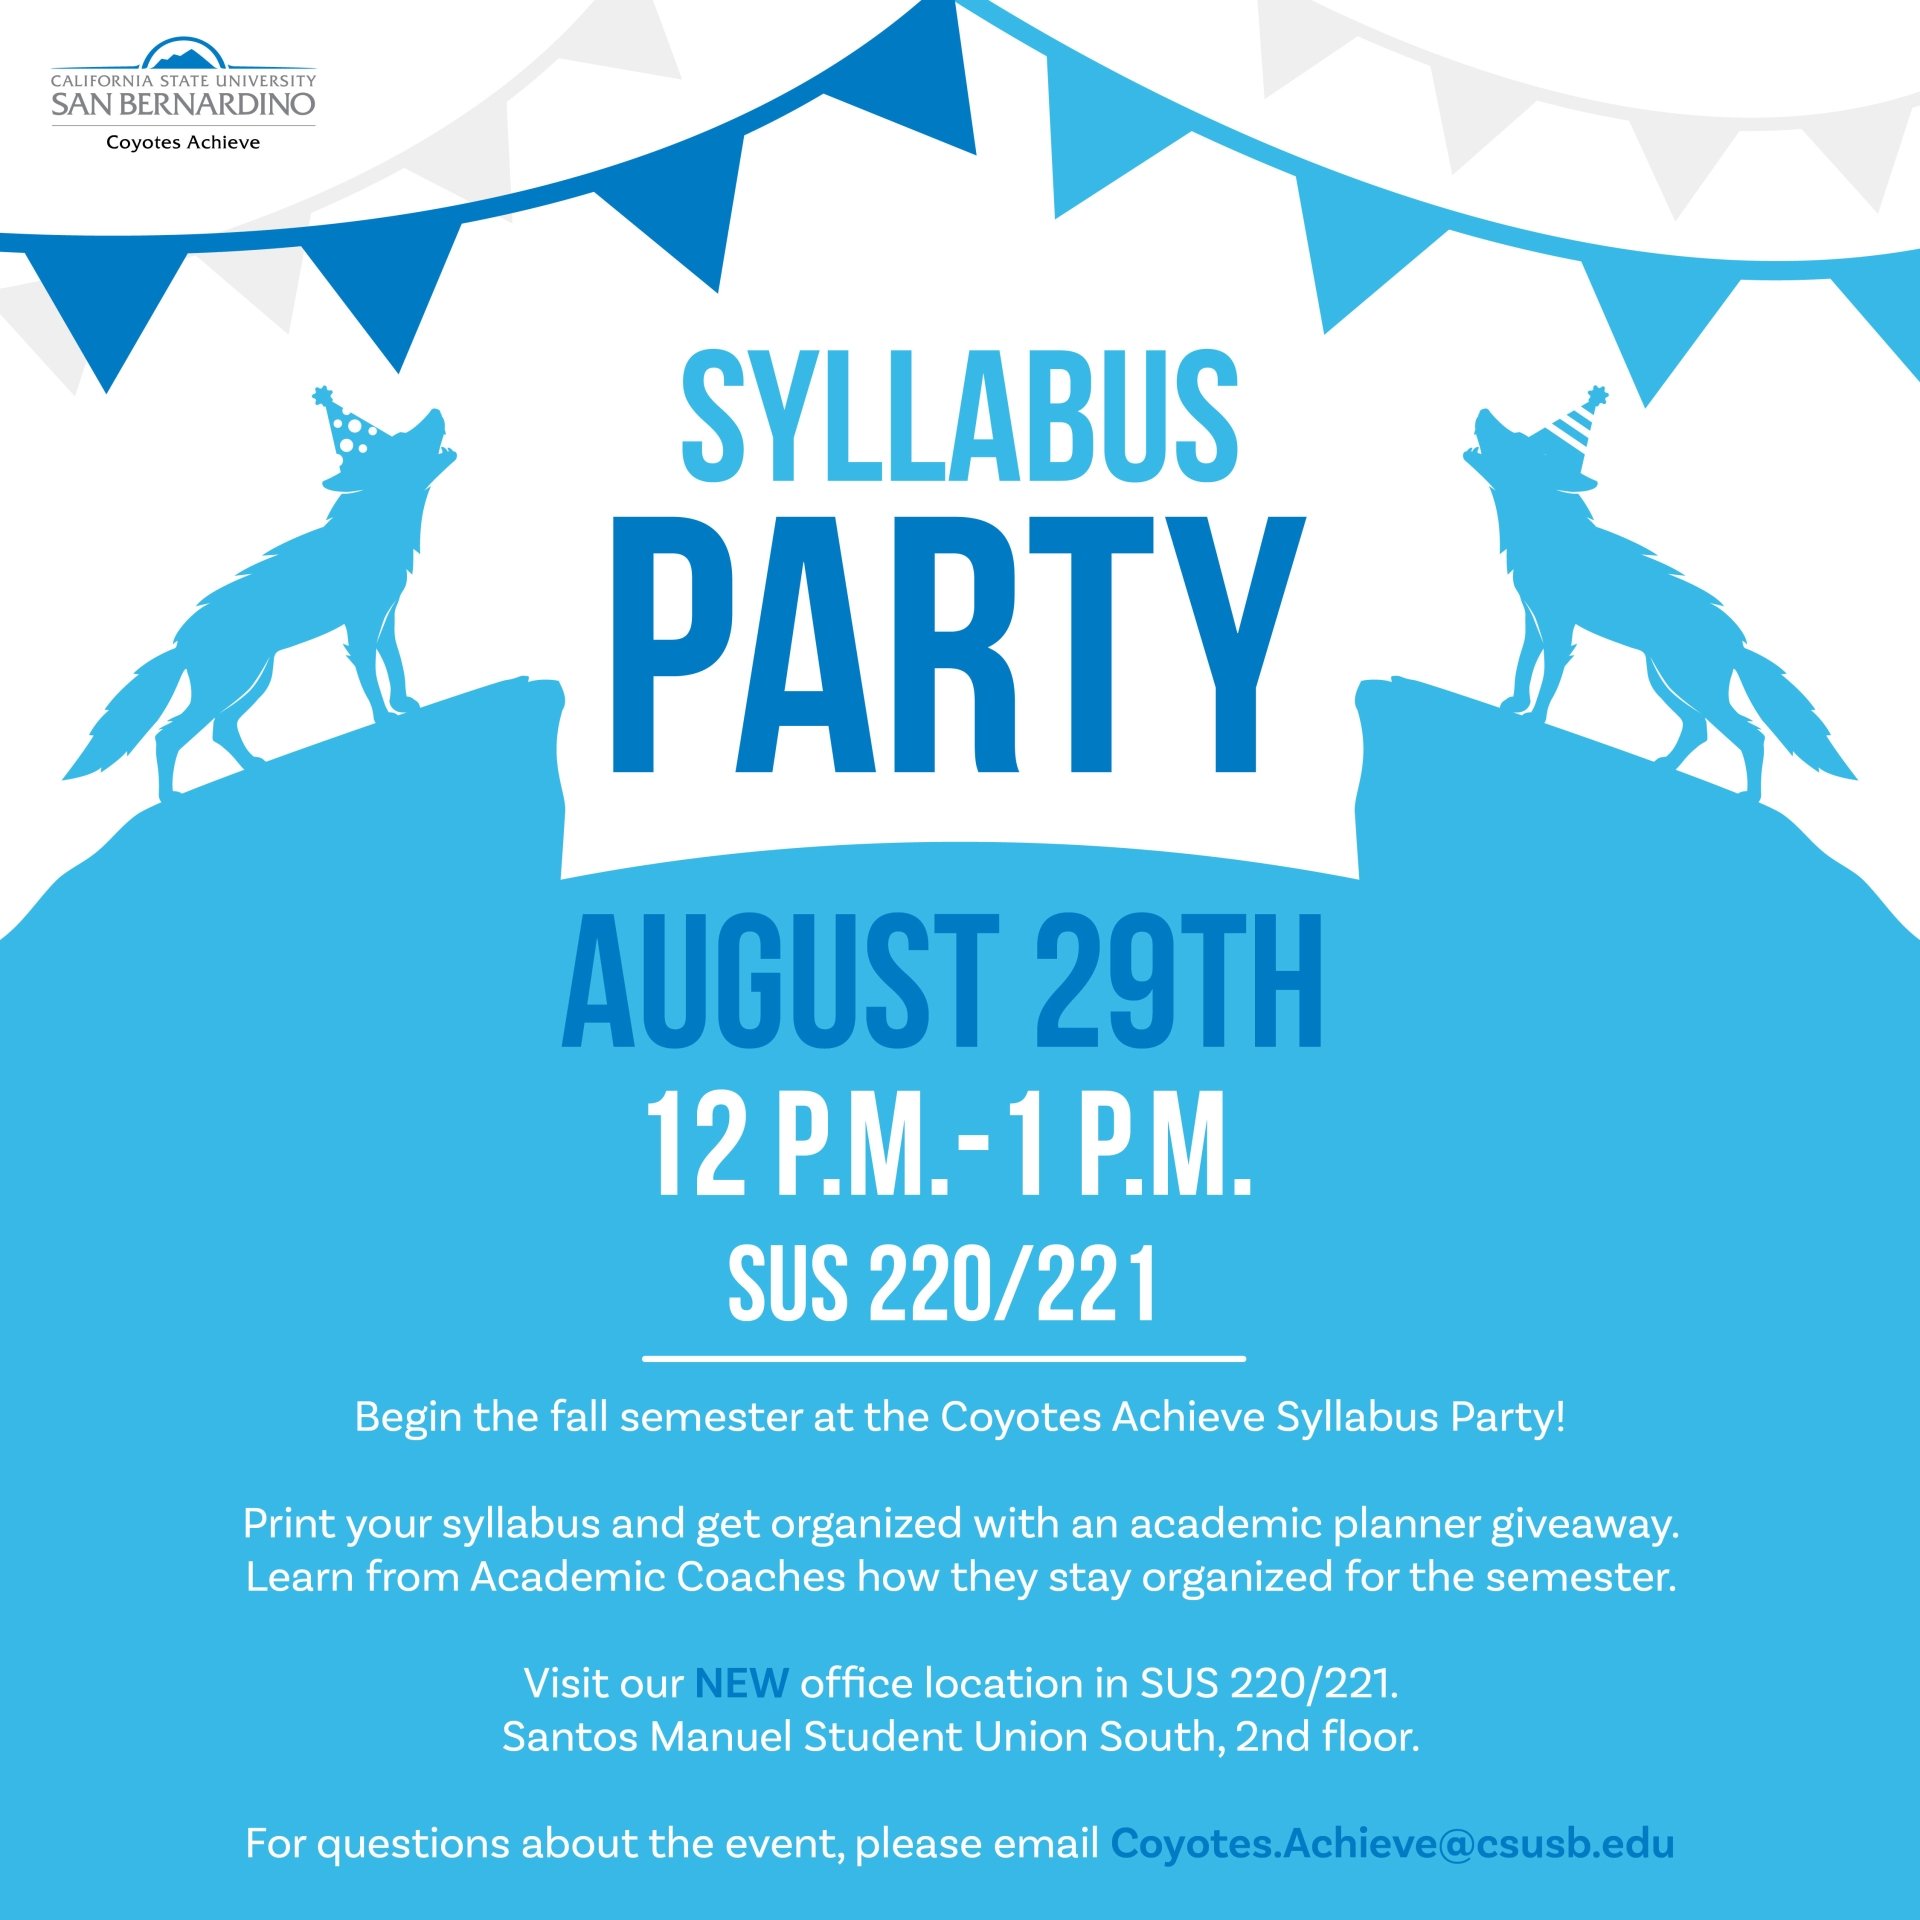 Syllabus Party Flyer